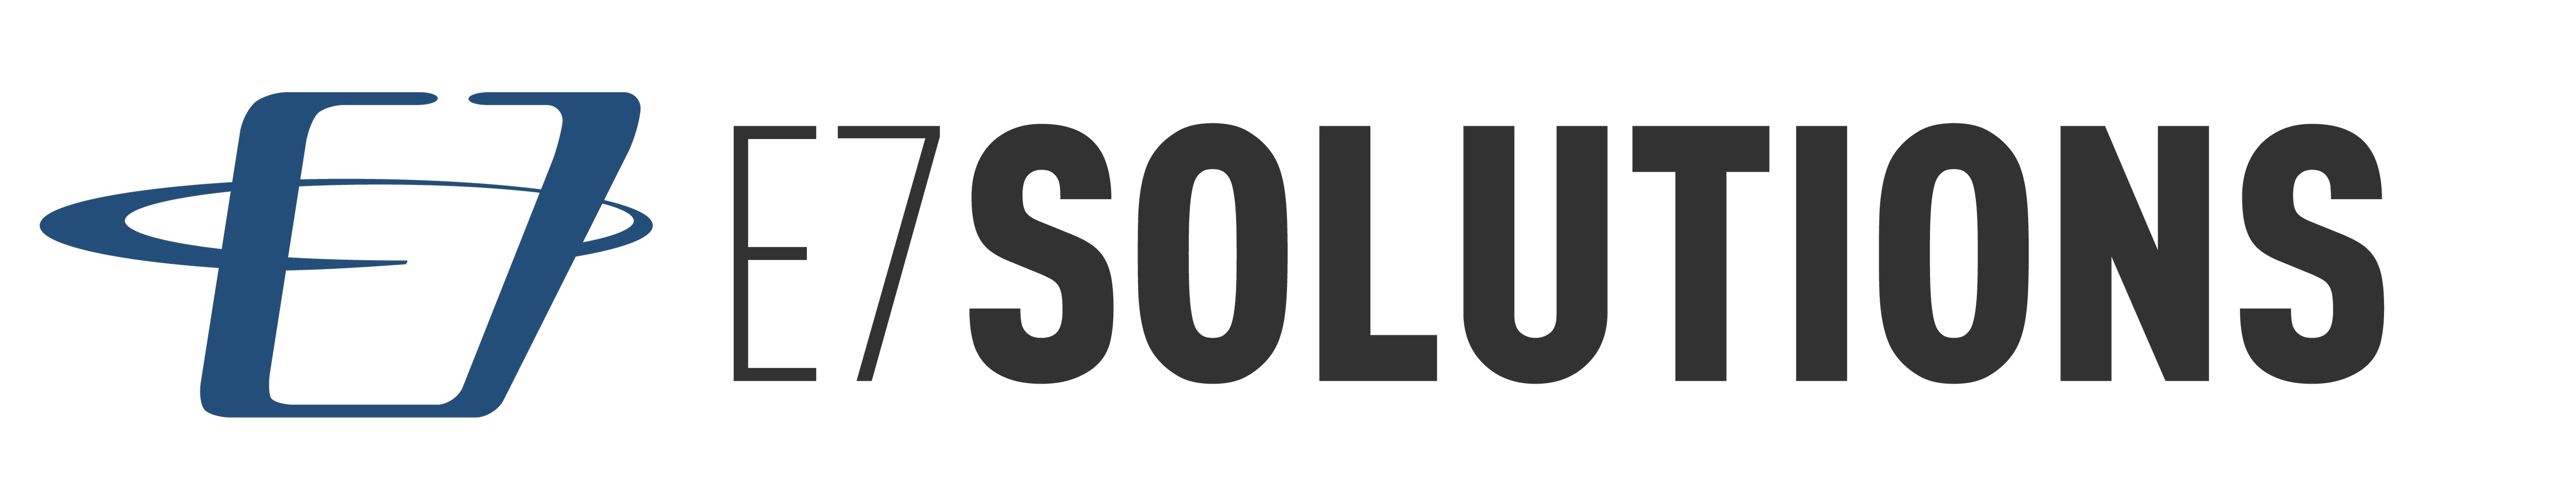 E7 solutions logo